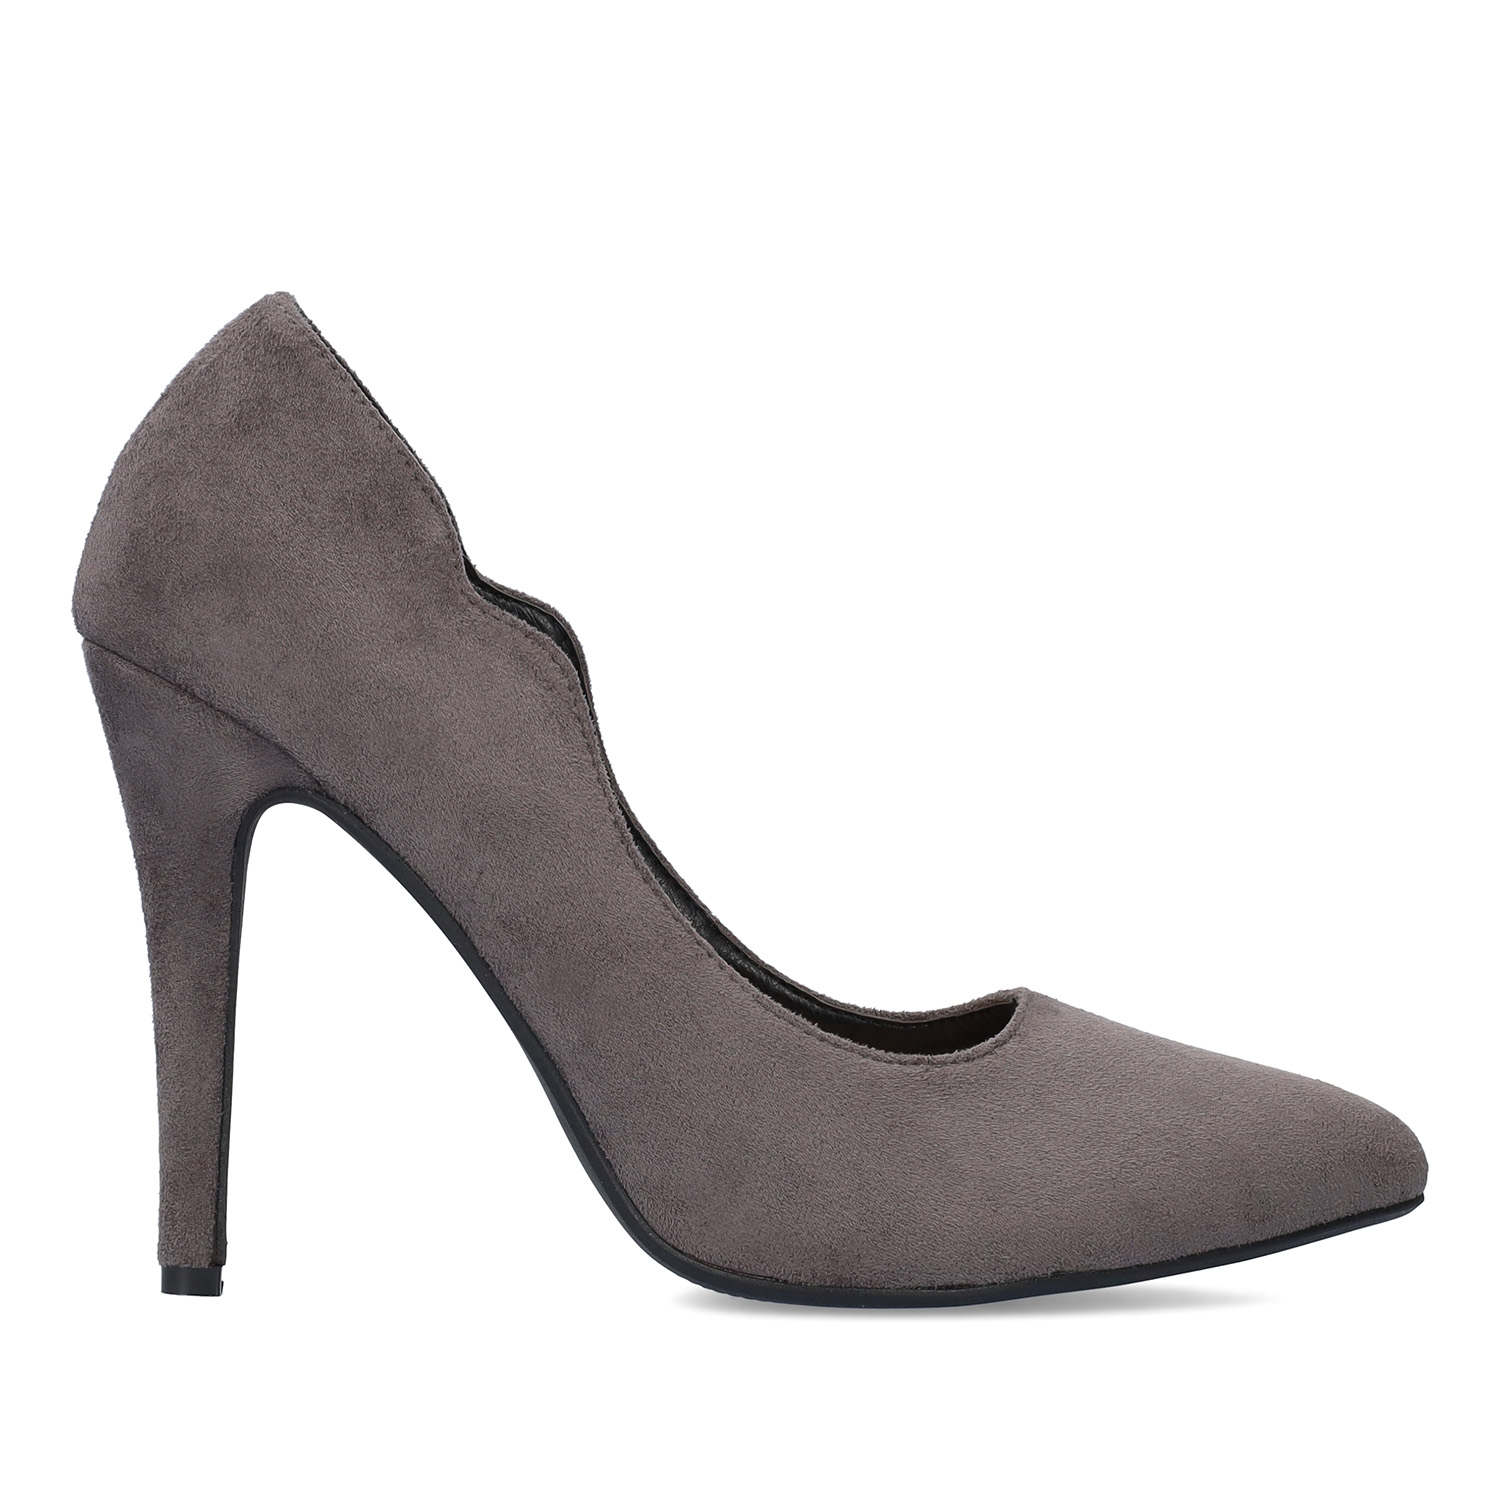 Fine tip stilettos in grey faux suede. 